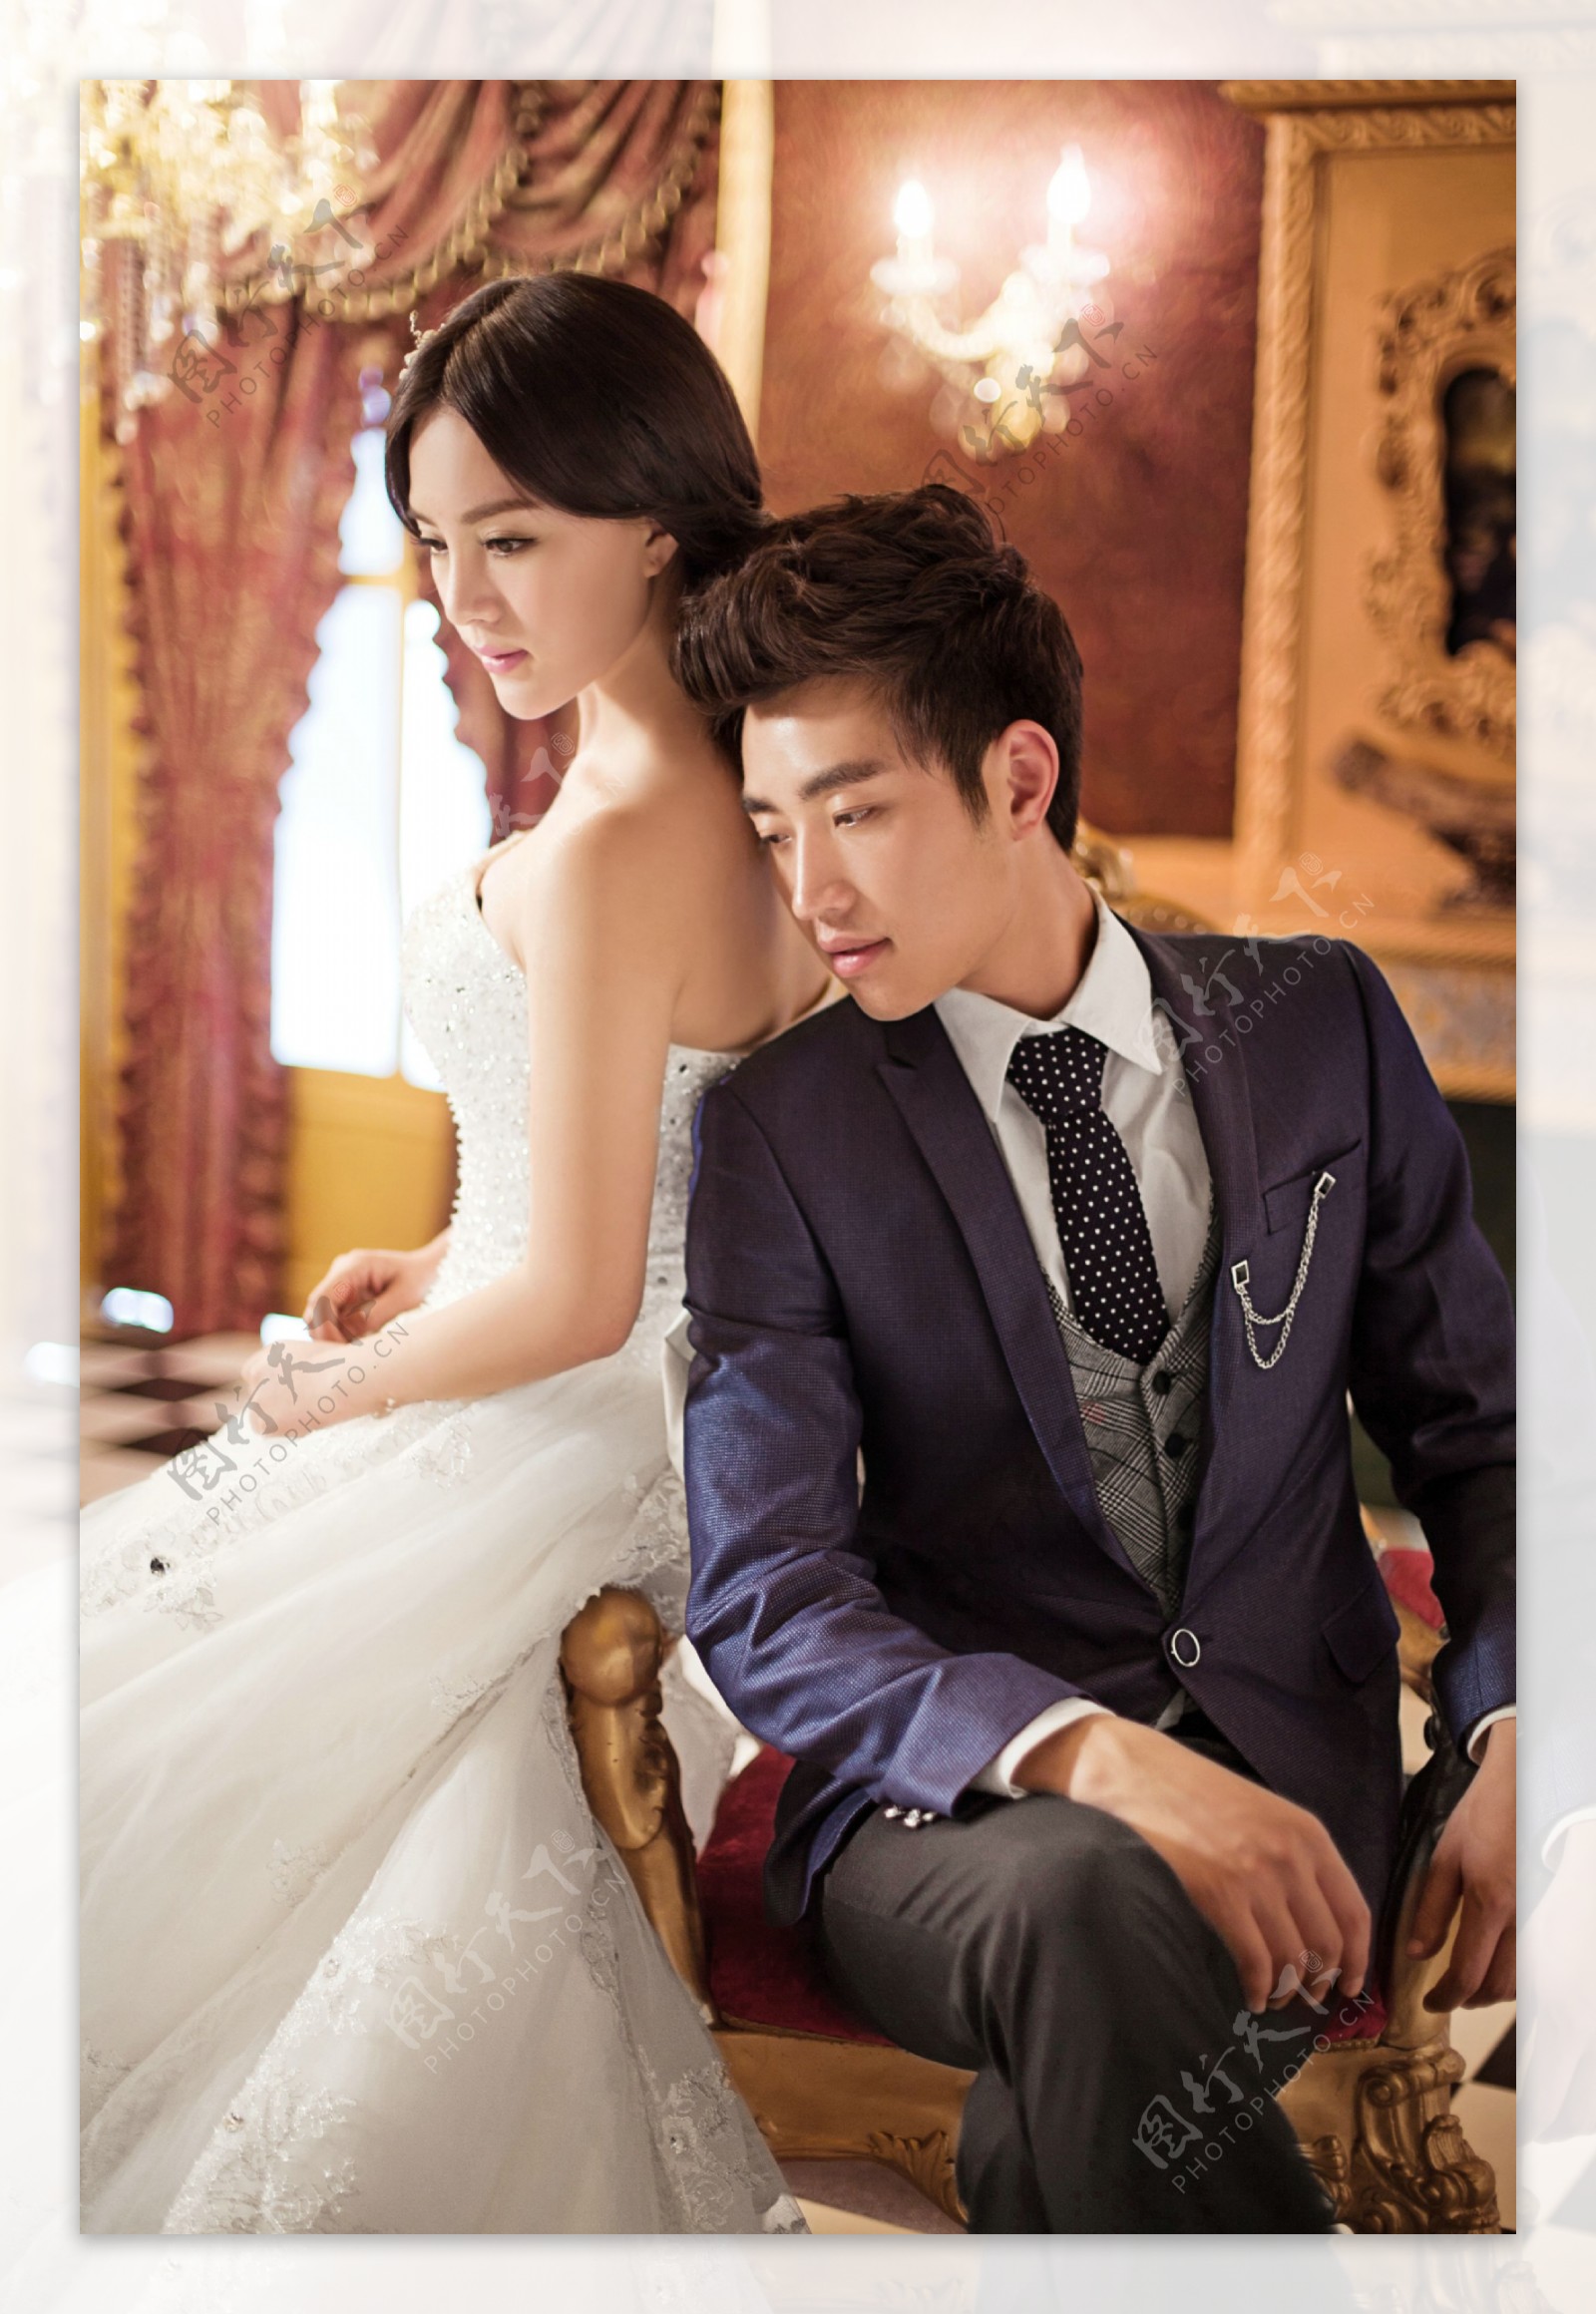 【首尔雨丝】一眼沦陷的欧式宫廷风~大气优雅 - 婚纱照客片 - 首尔首尔婚纱摄影